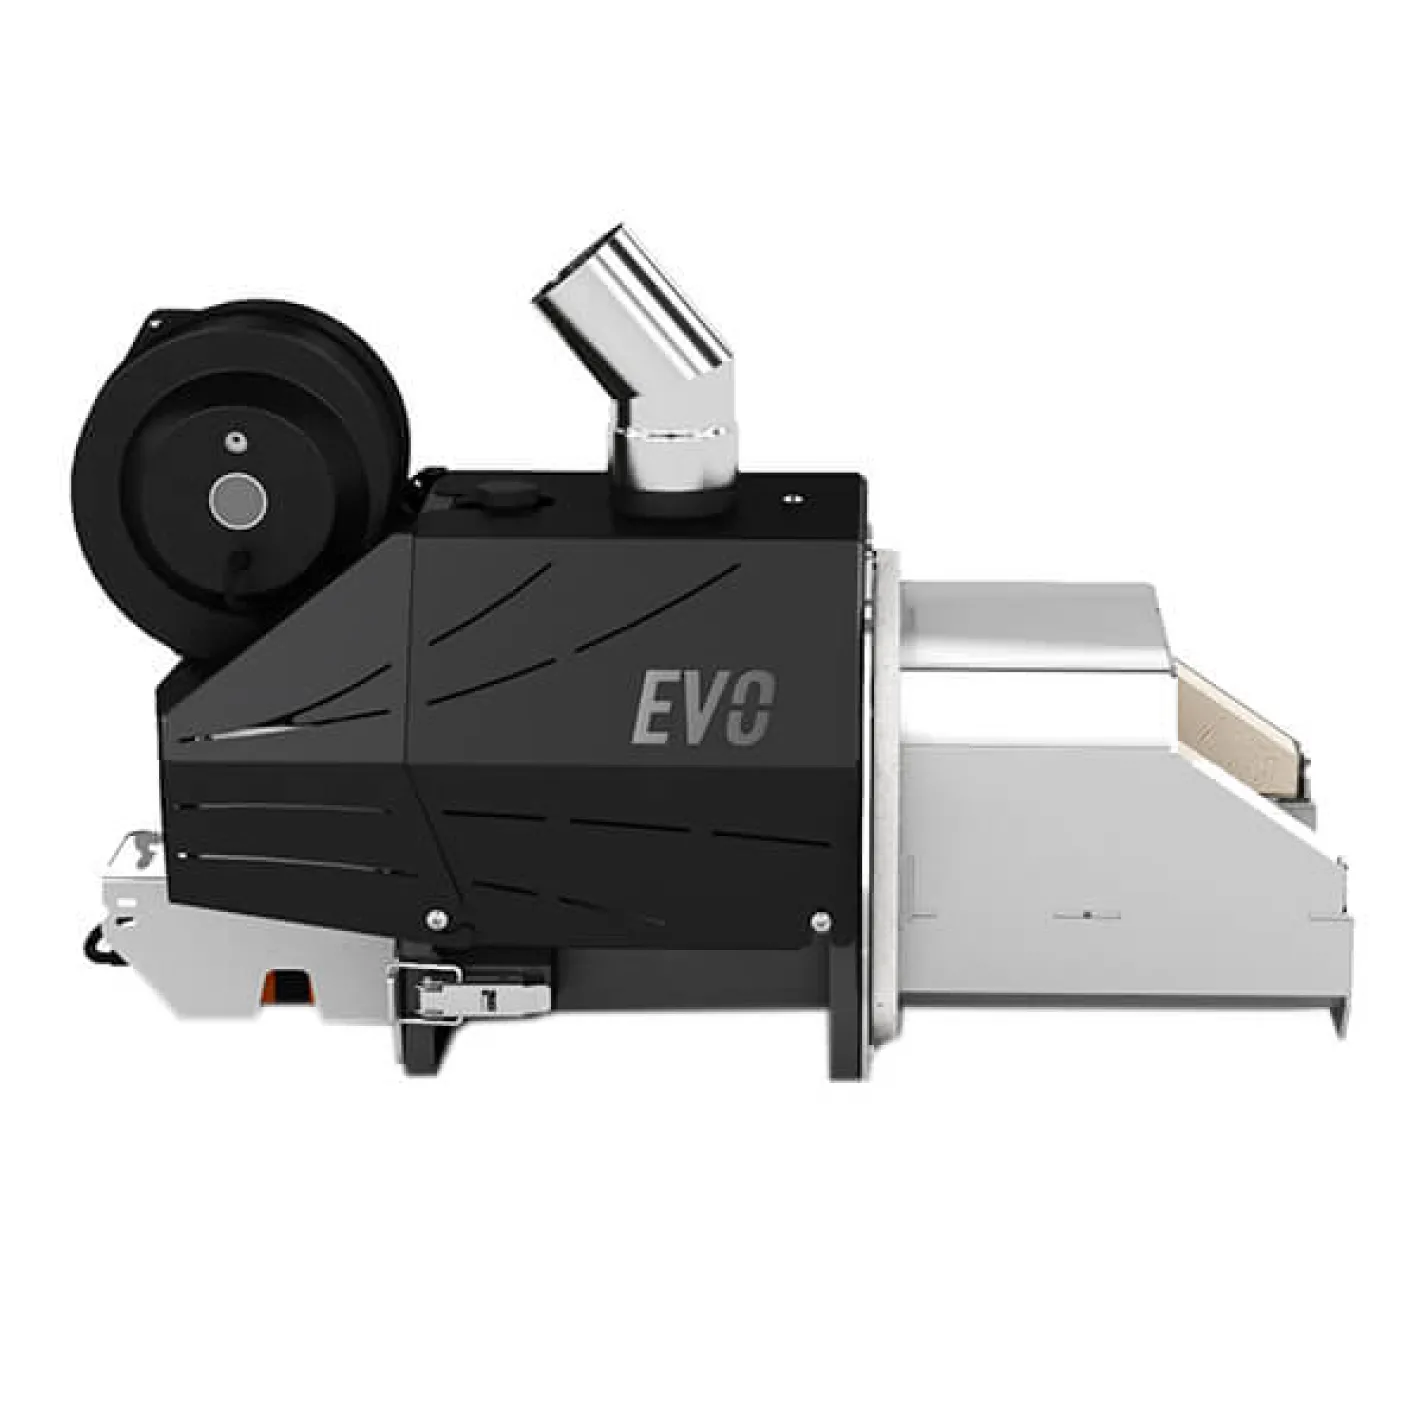 Пеллетная горелка OXI EVO 18 (шамотированная) в комплекте с контроллером OXI-1 и шнеком - Фото 3